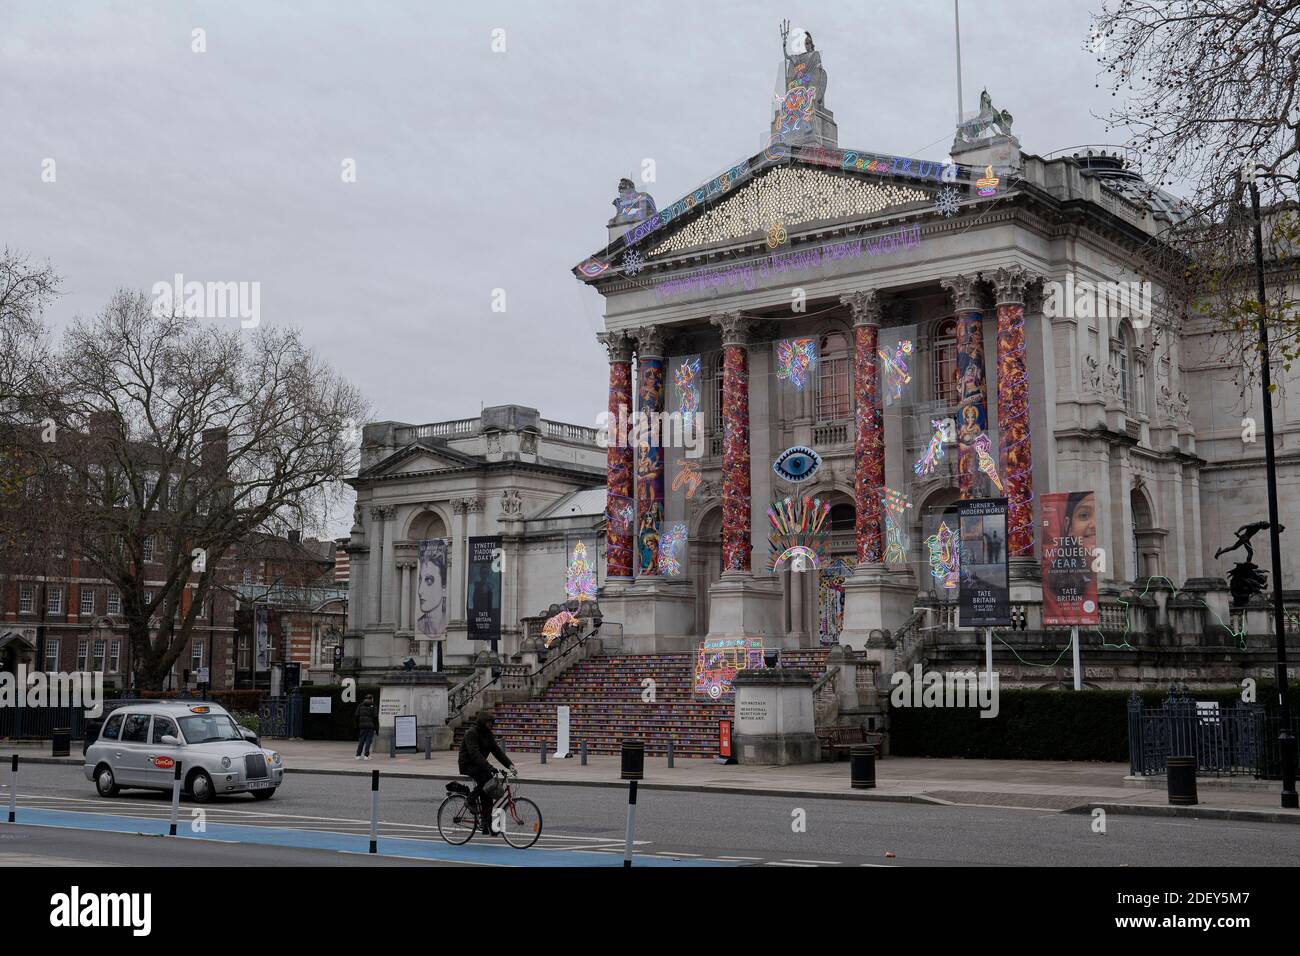 Londres, Inglaterra - 02-12-2020. Recordando UN nuevo mundo valiente. una comisión de invierno de Tate Britain 2020 por Chila Kumari Singh Burman. (Foto de Sam Mellish Foto de stock